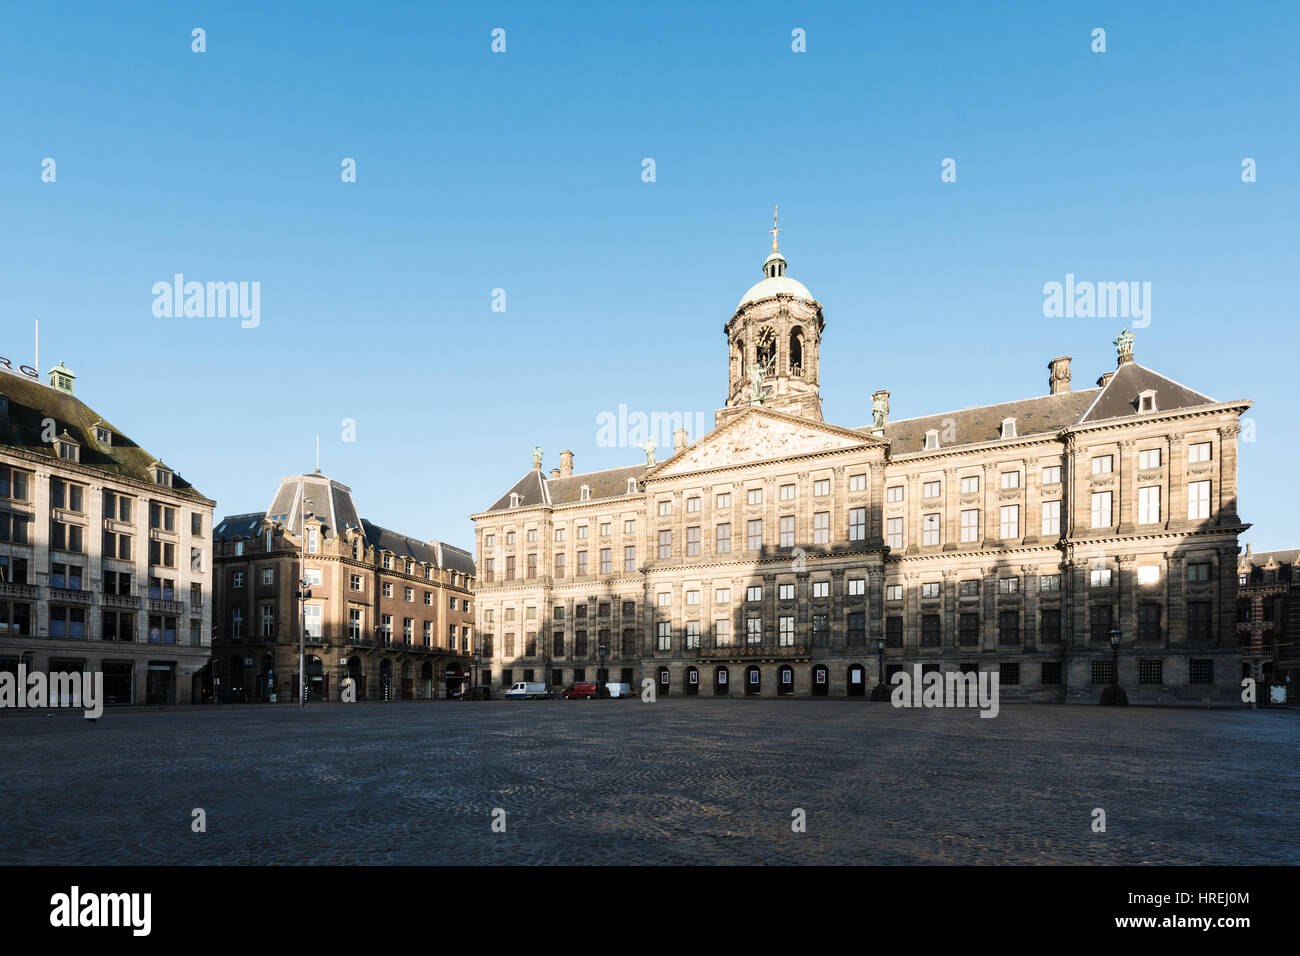 Königlicher Palast auf dem Dam Platz in Amsterdam, Niederlande. Kein Volk Damplatz in Amsterdam, Niederlande. Stockfoto